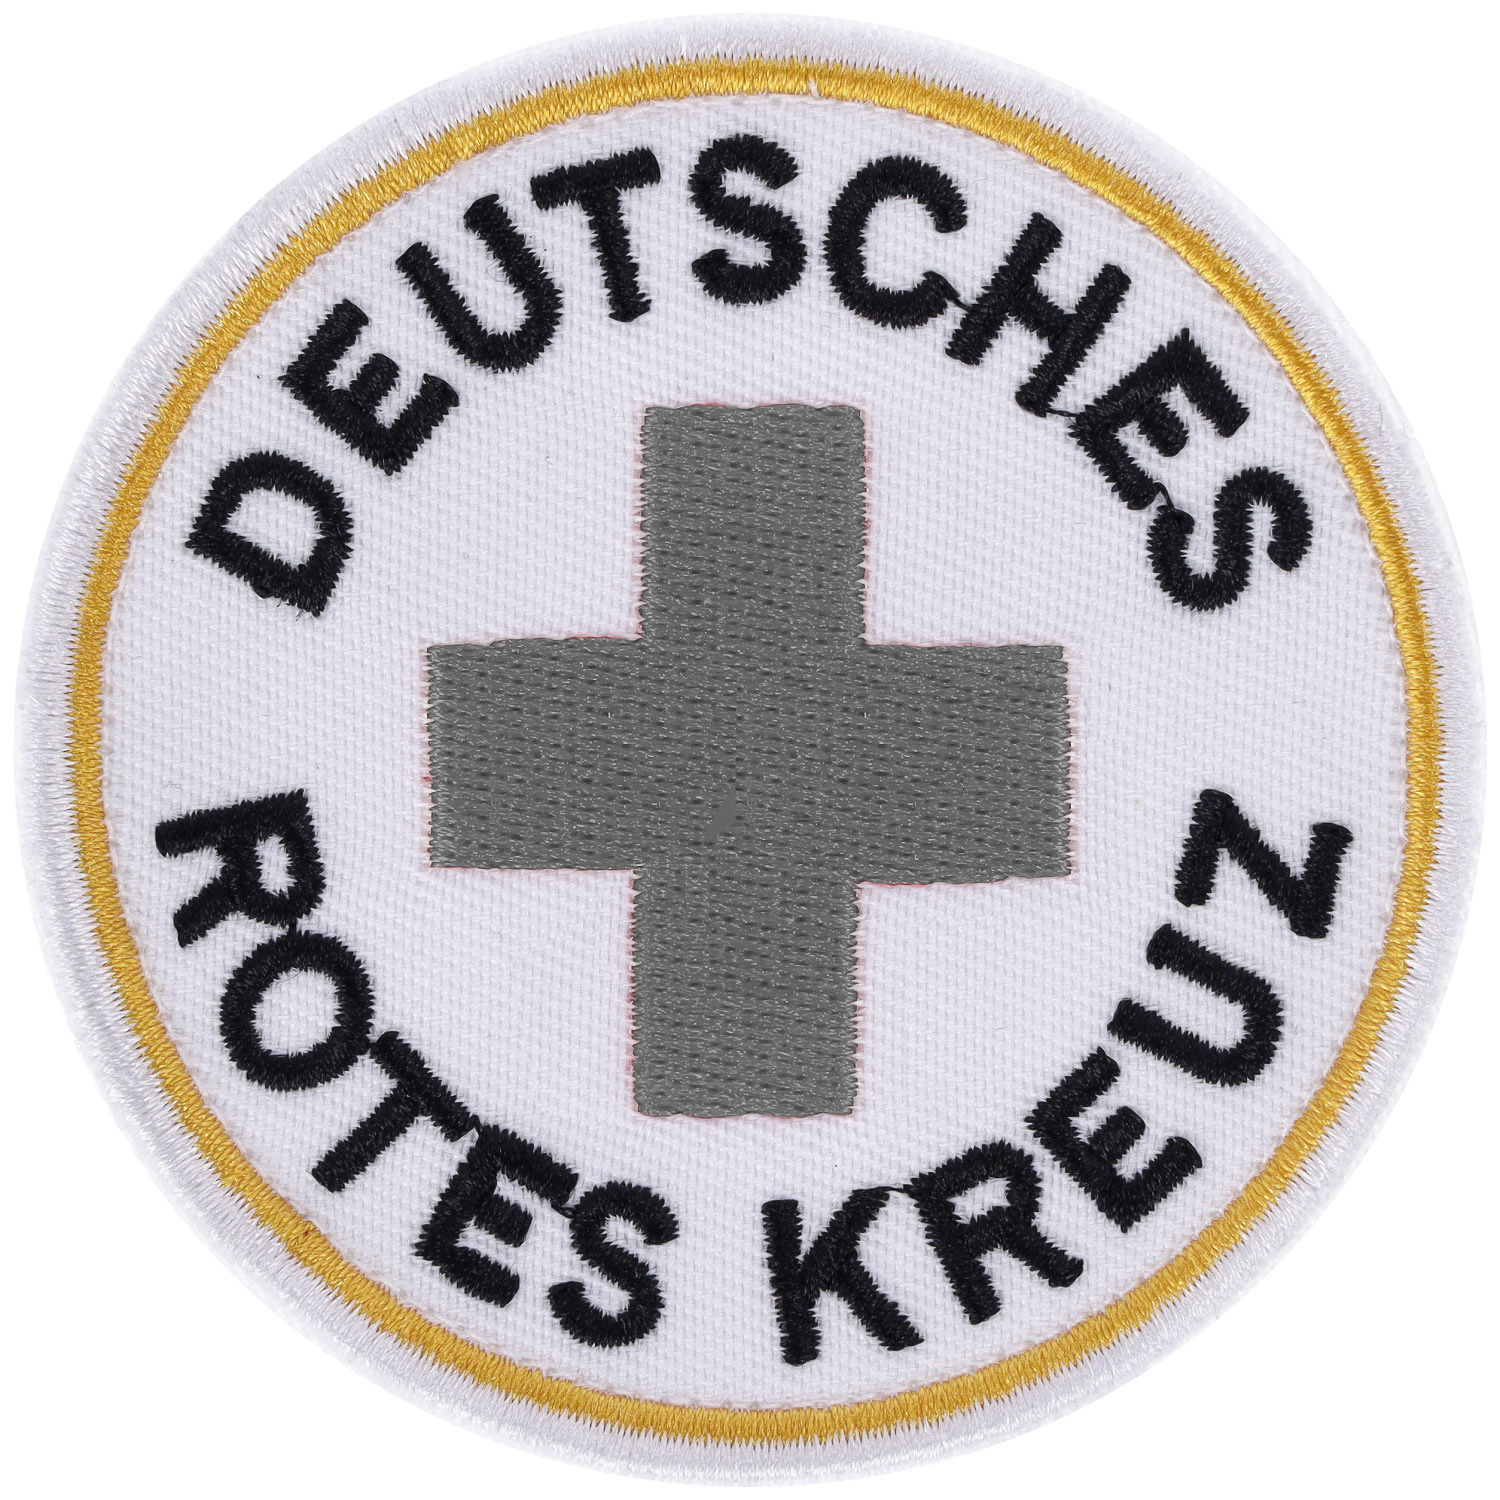 Ärmelabzeichen DRK-Rundlogo mit Klett, 80 mm Durchmesser